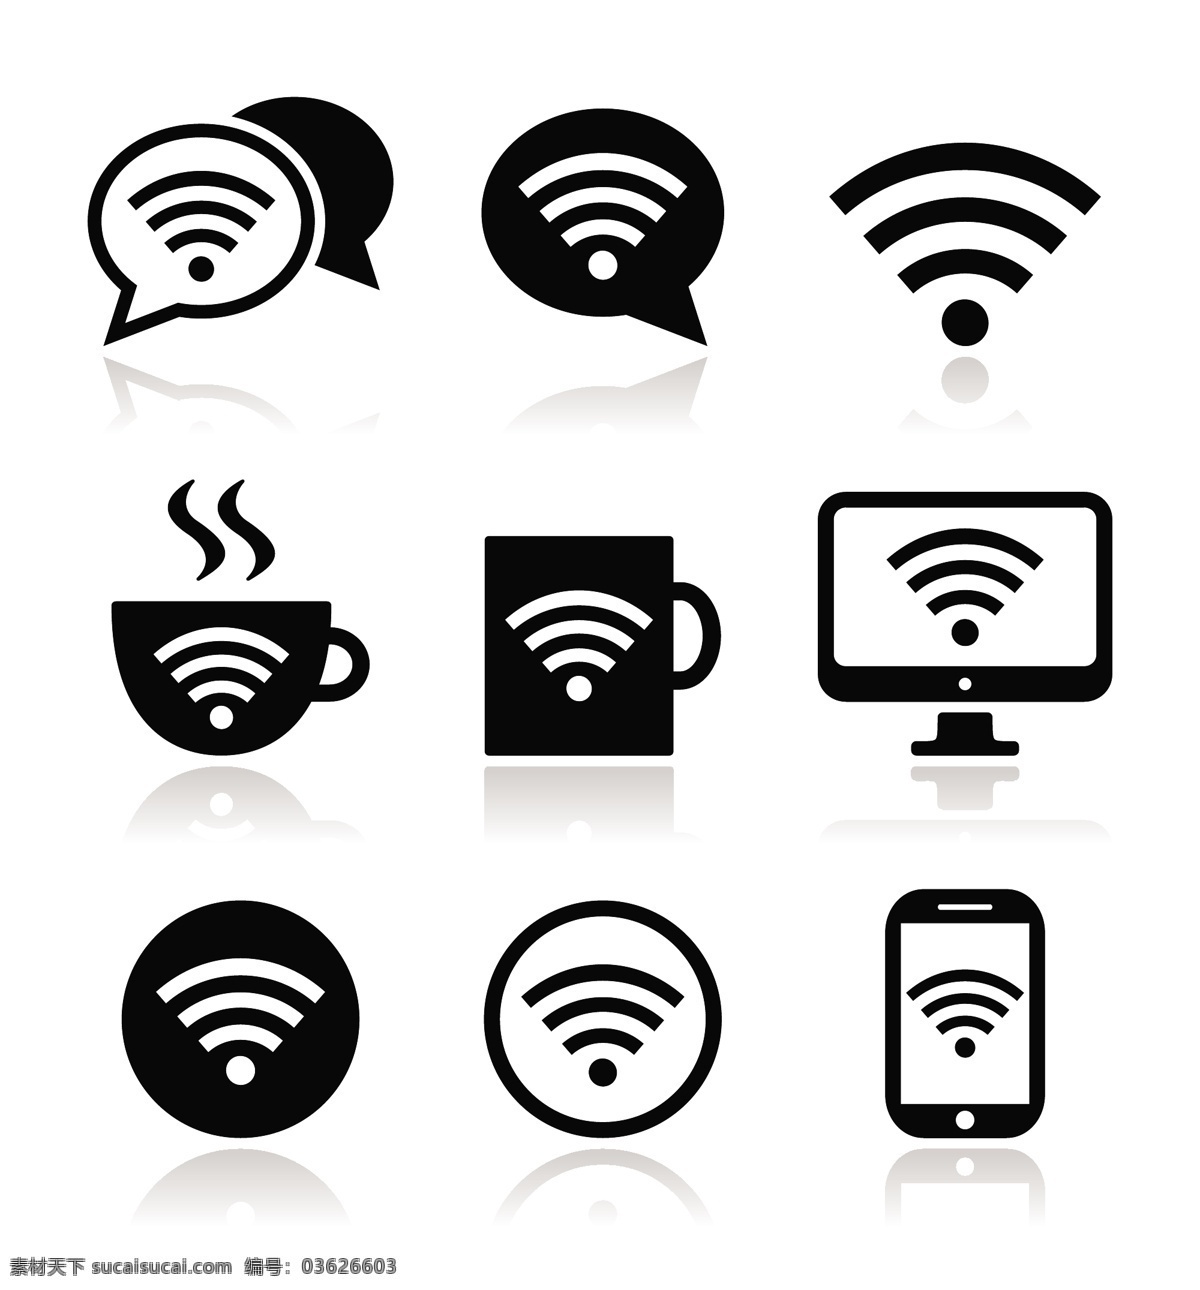 wifi 无线 热点 图标 无线热点 无线网络 wifi图标 热点图标 无线图标 咖啡店 免费 提供 标志图标 公共标识标志